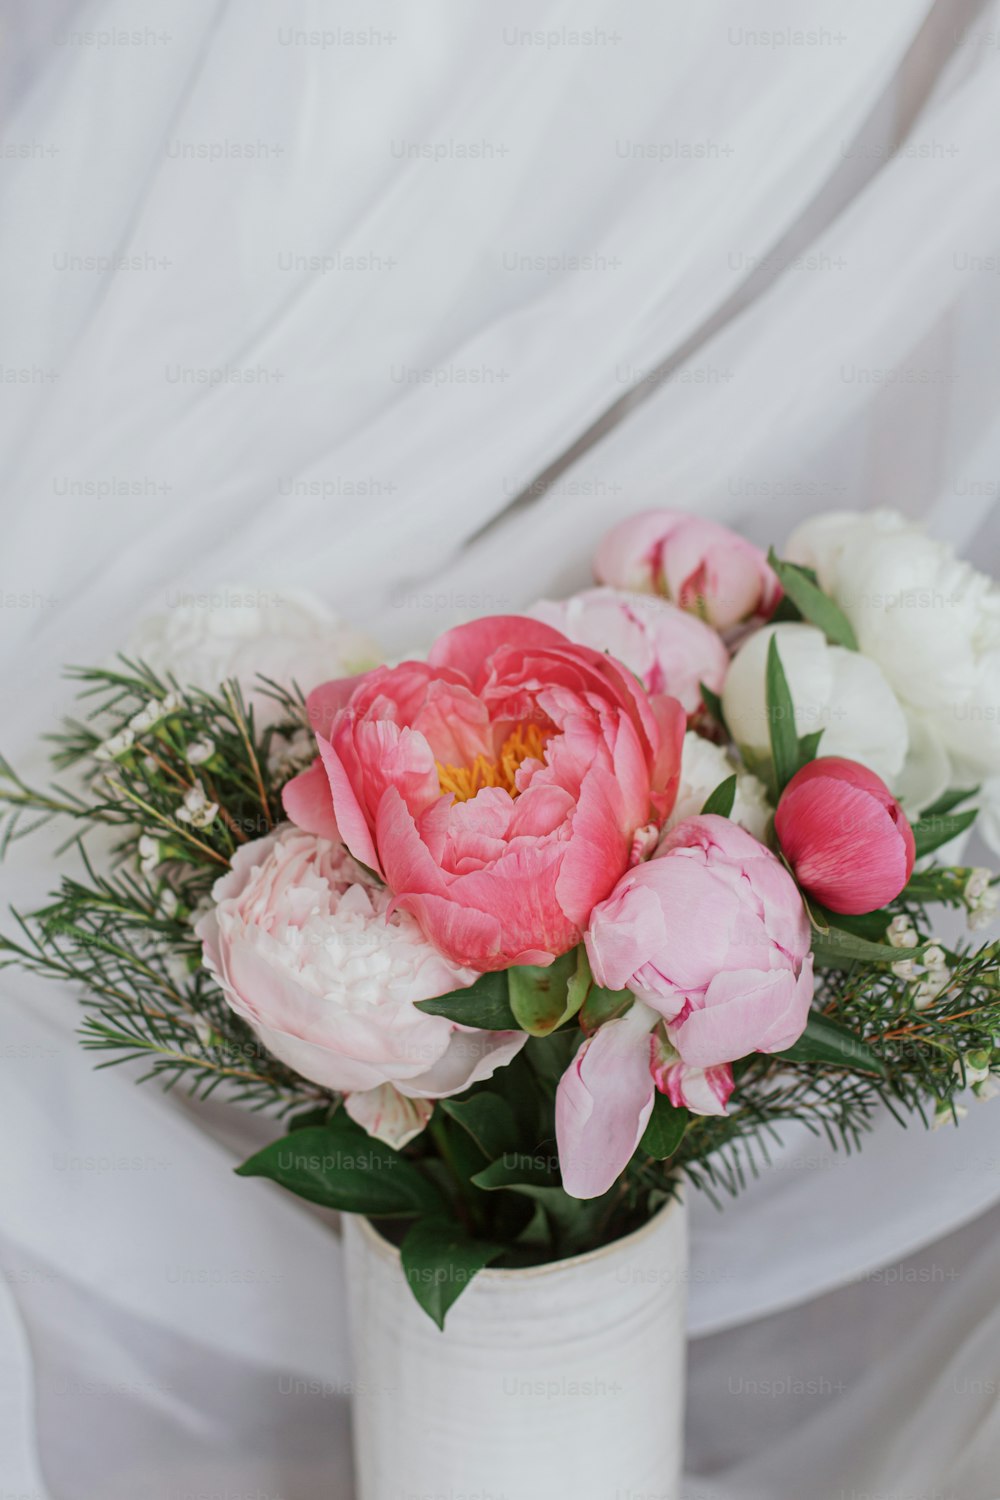 Buquê bonito de peônias elegantes no fundo do tecido branco macio. Flores de peônia rosa e branca em vaso de cerâmica no fundo rústico pastel. Feliz Dia das Mães. Buquê de noiva moderno